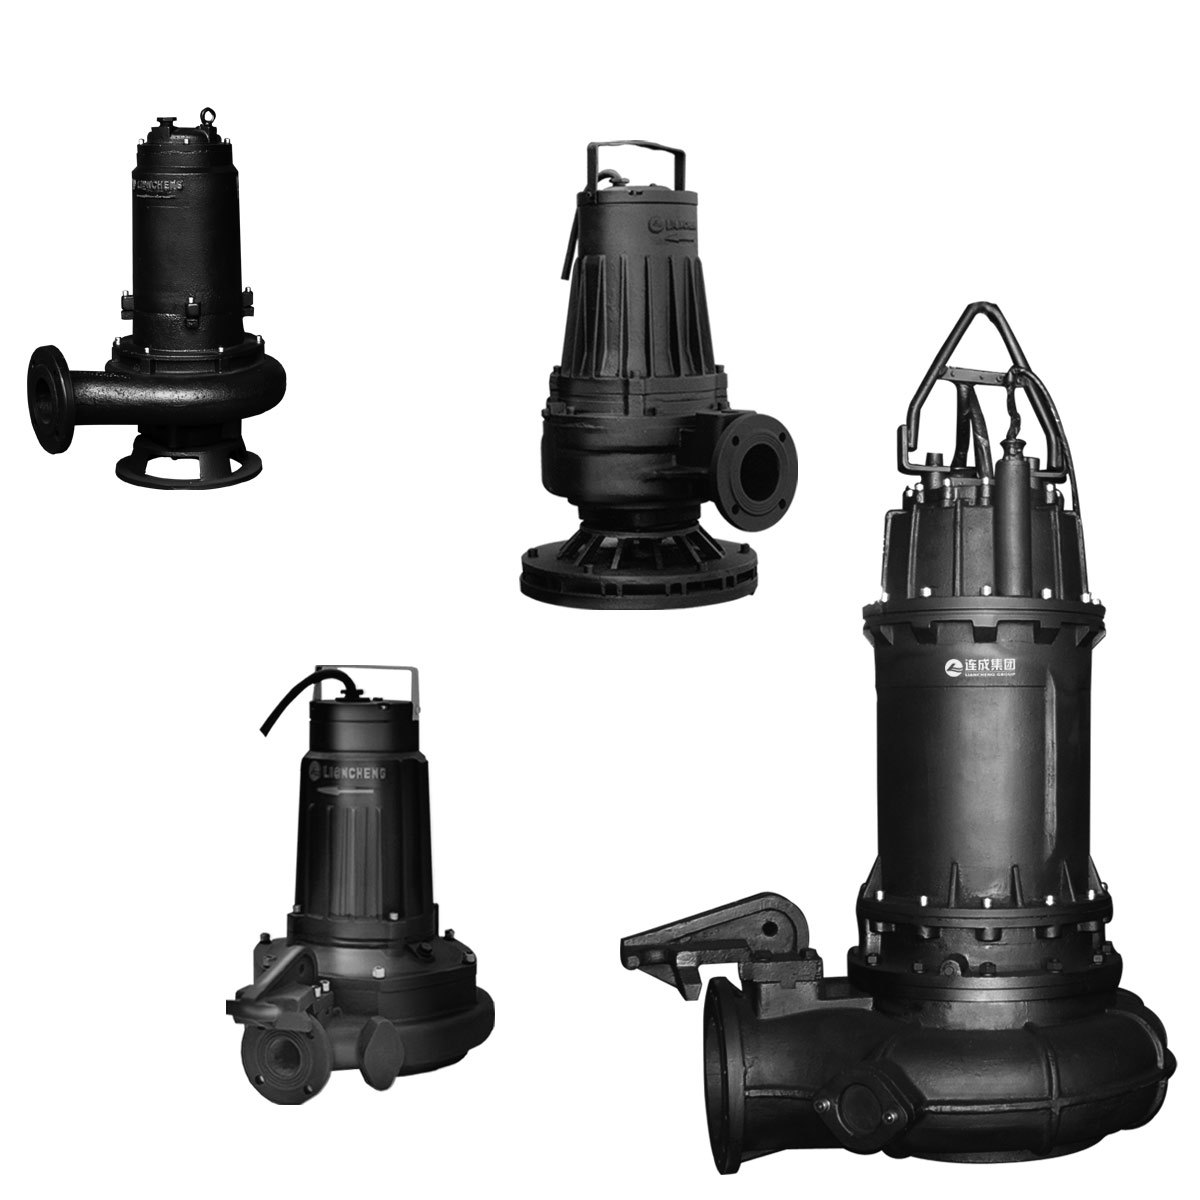 submersible sewage pump